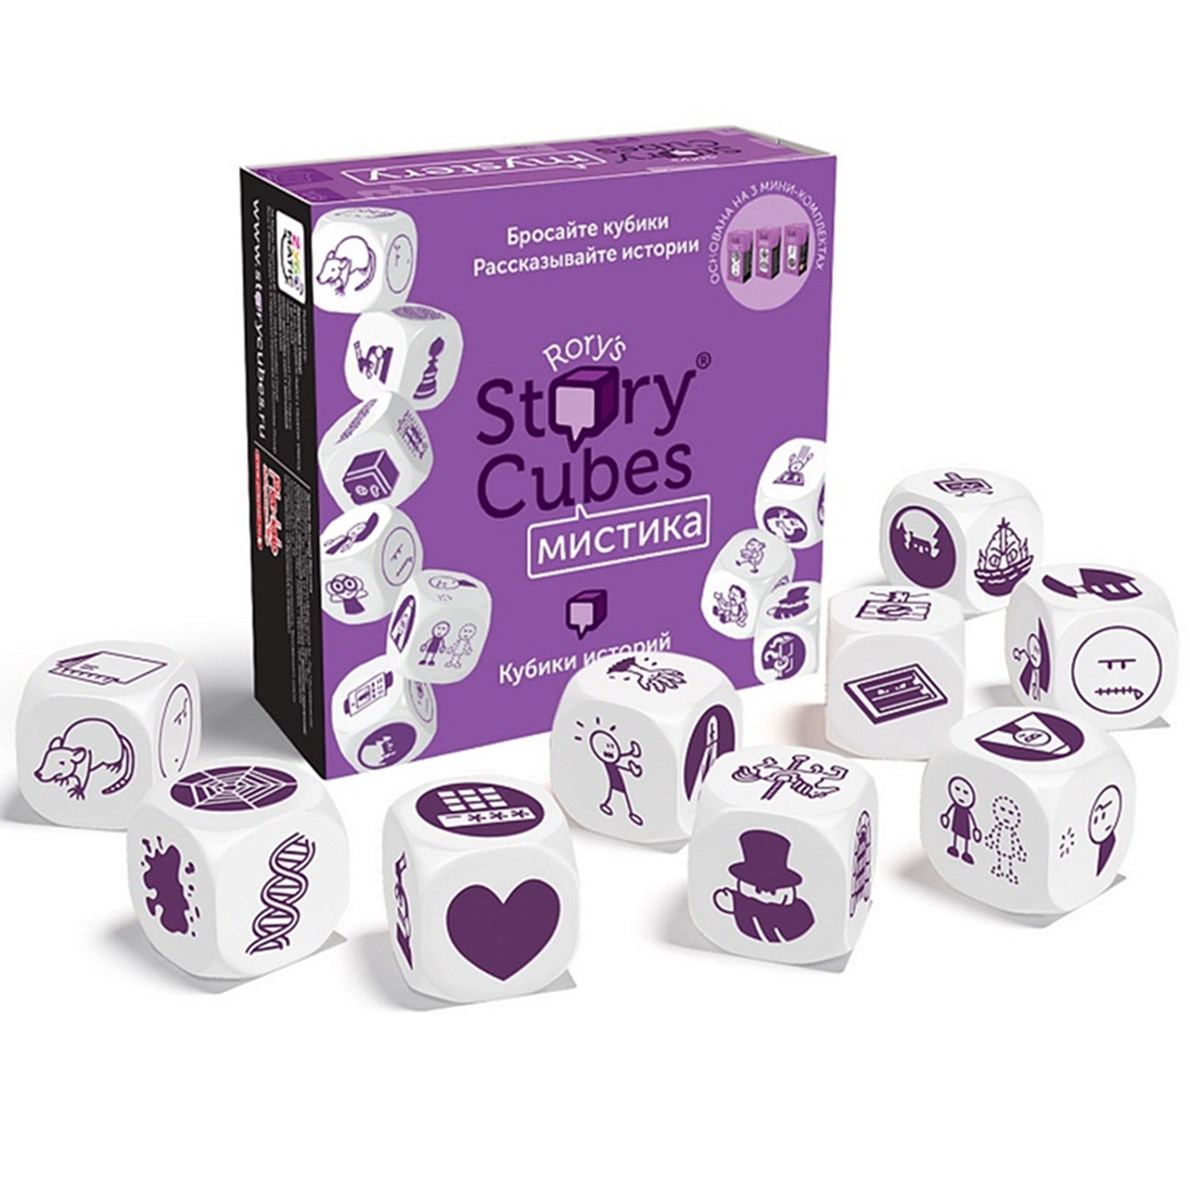 Кубики Историй Мистика (9 кубиков) интеллектуальная игра кубики для всех